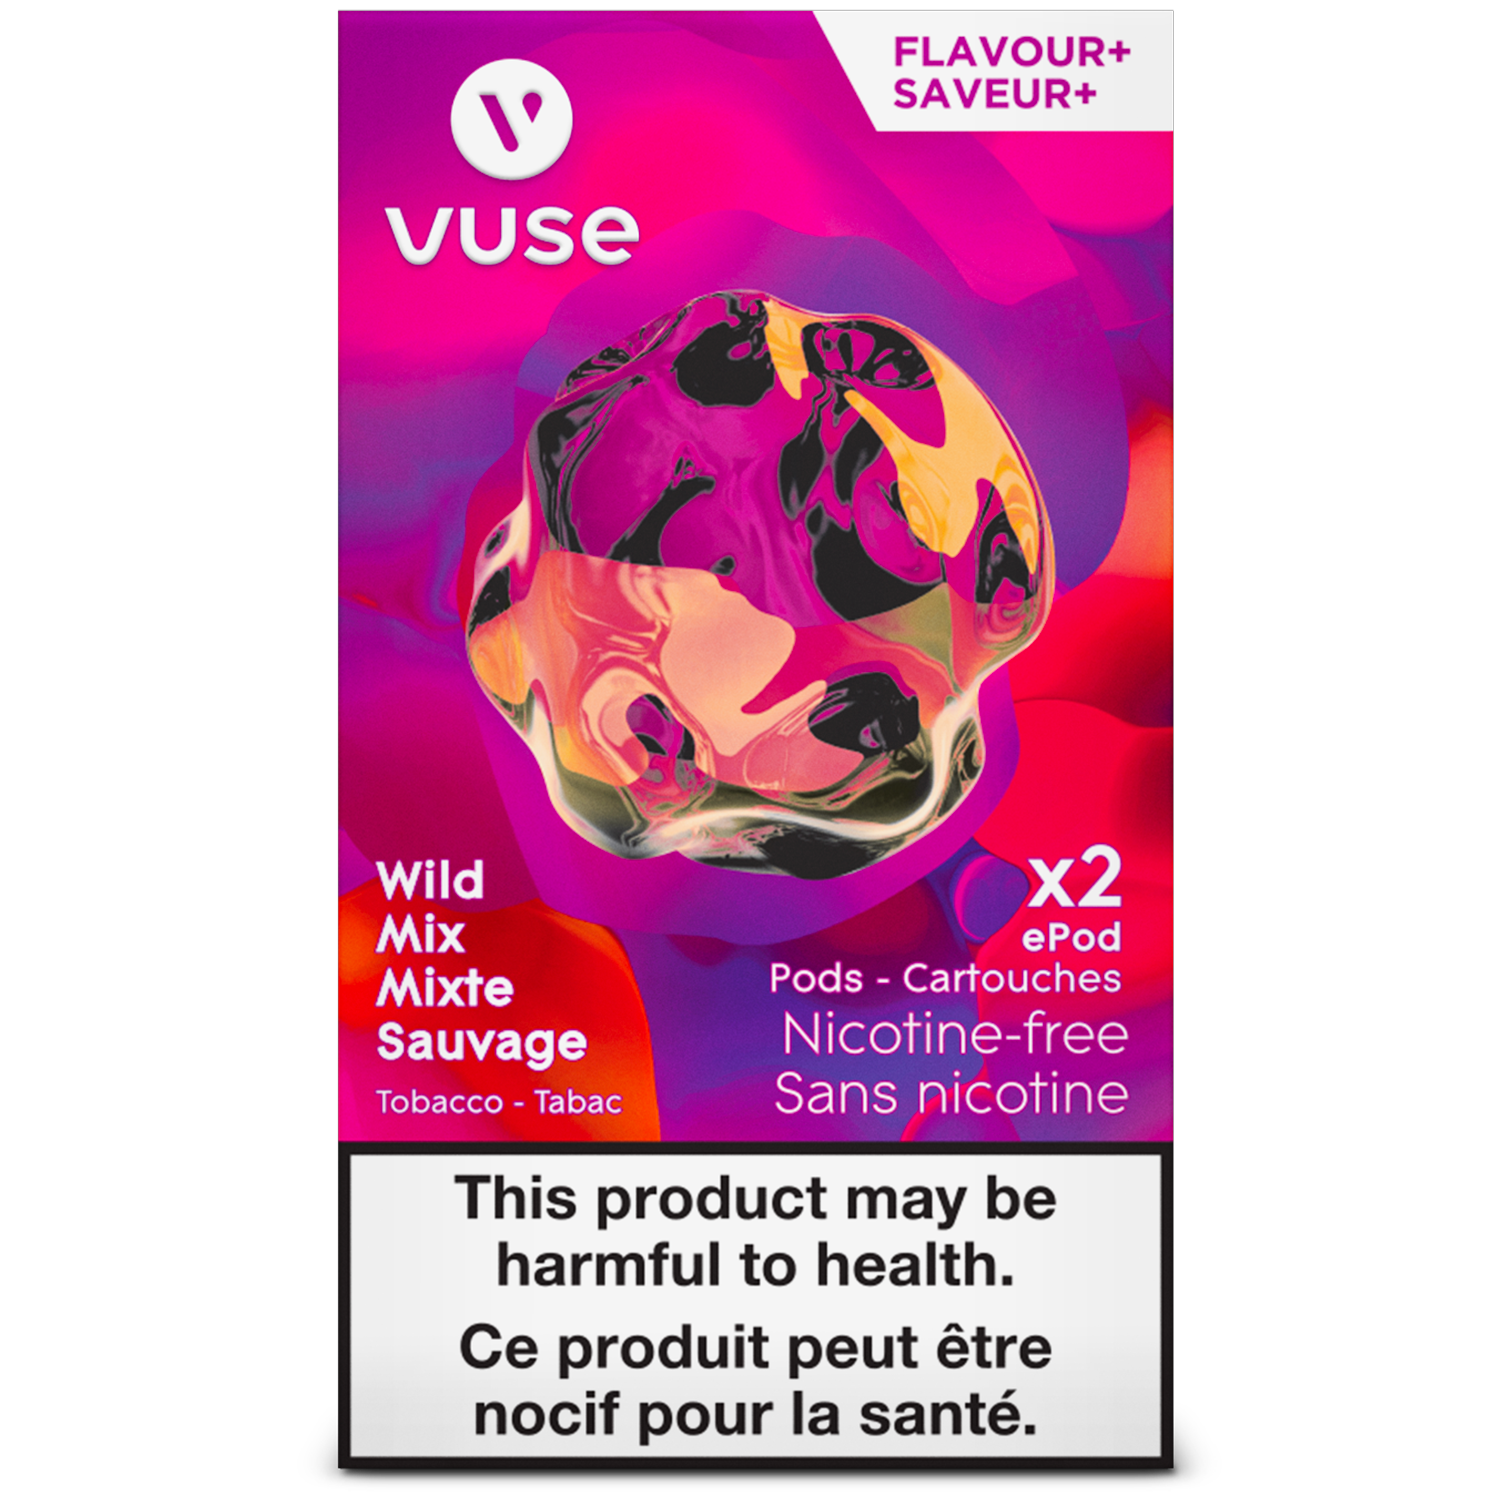 Vuse - Flavour+ - Pod